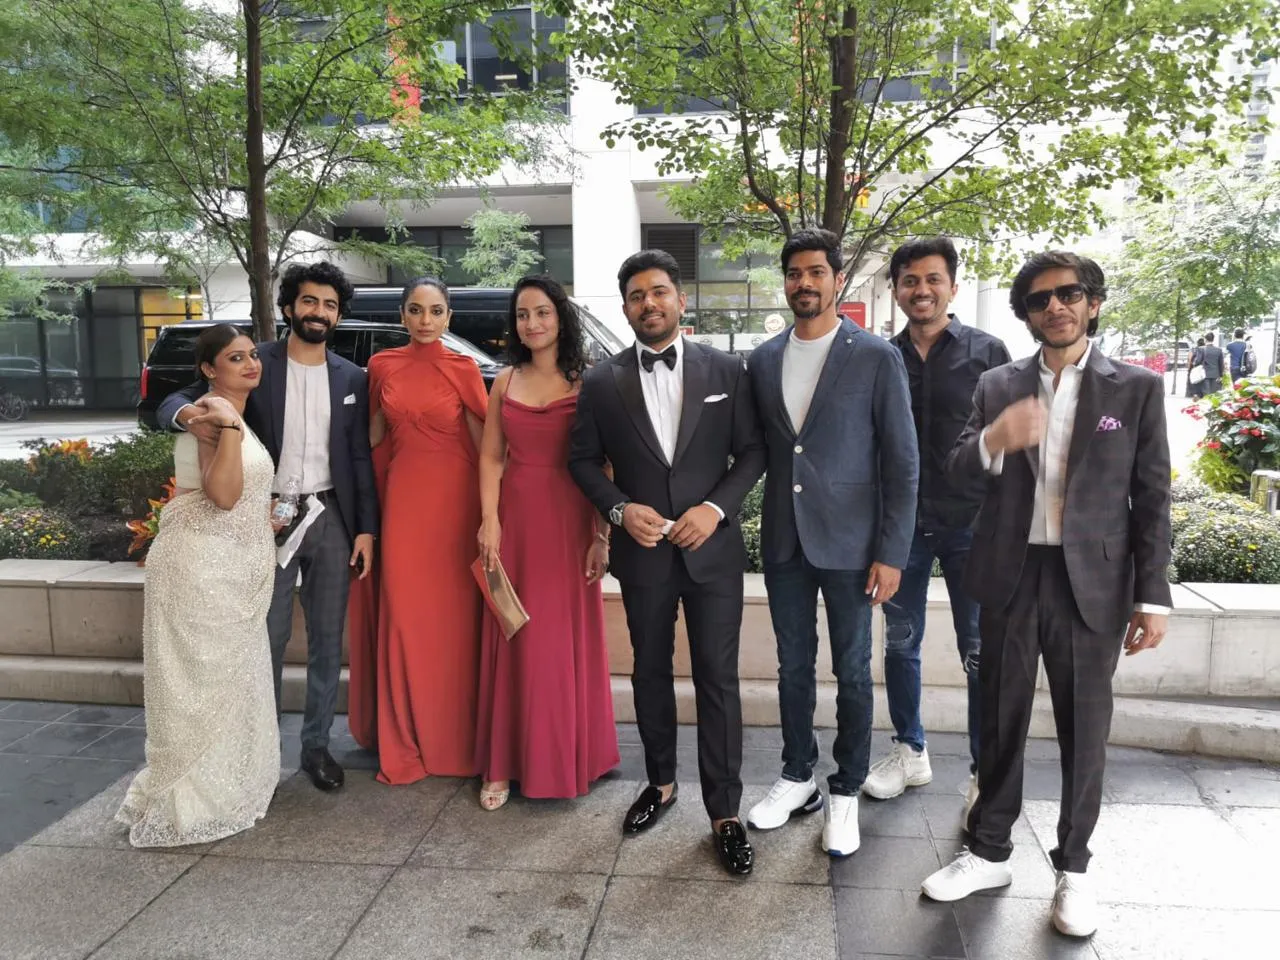 TIFF 2019: ‘मूथॉन’ के प्रीमियर में शामिल हुए अनुराग कश्यप, निविन पॉली और सोभिता धुलिपाला